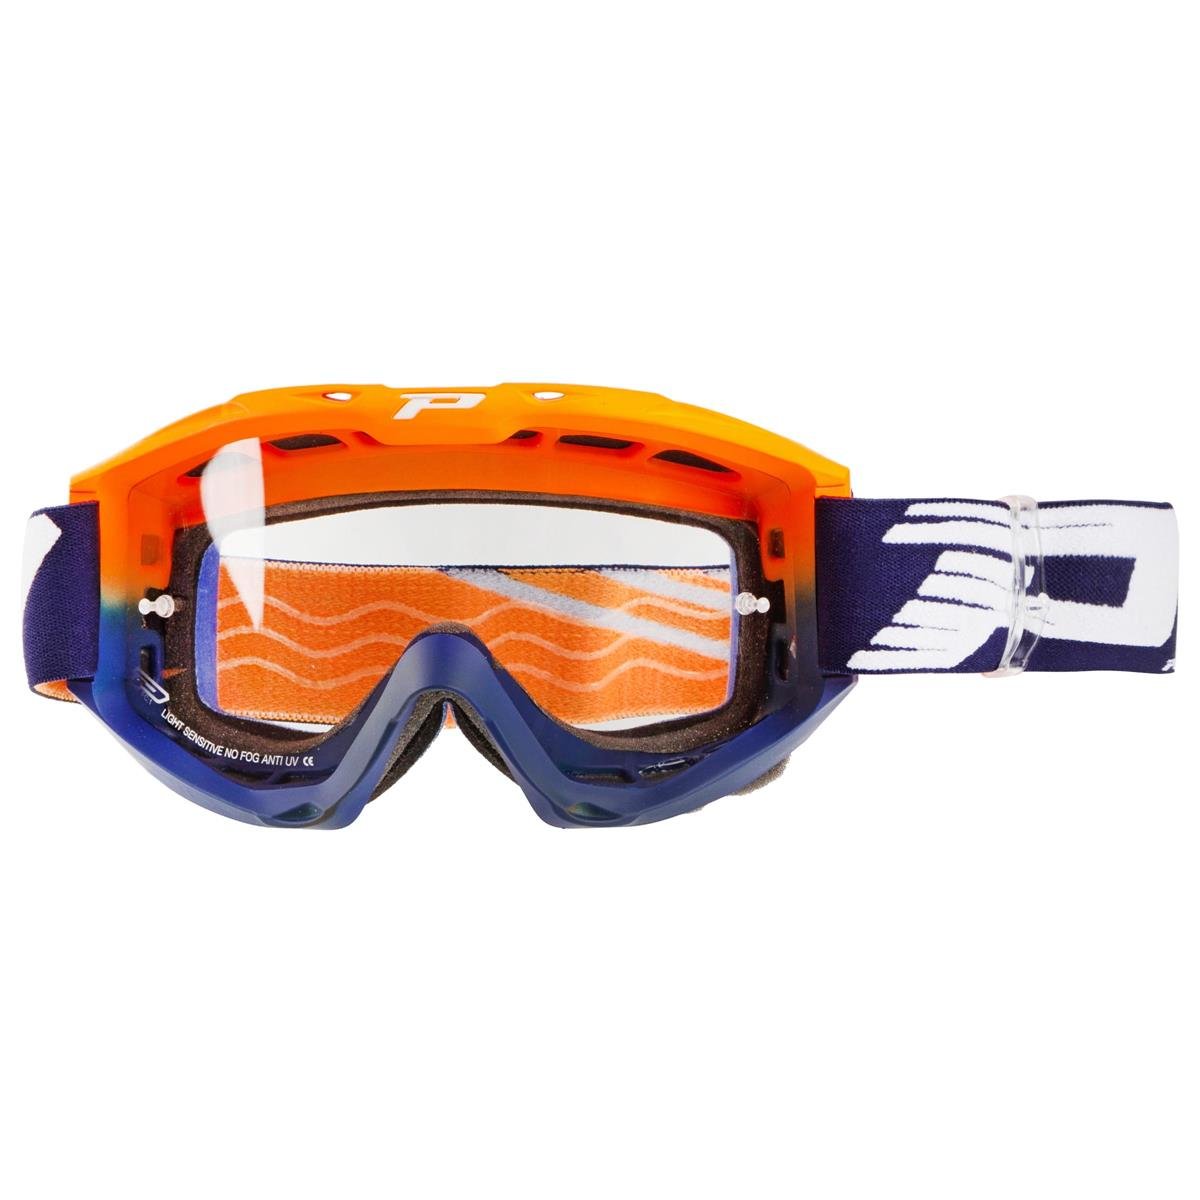 ProGrip Crossbrille 3450 LS Riot Orange Fluo/Blau